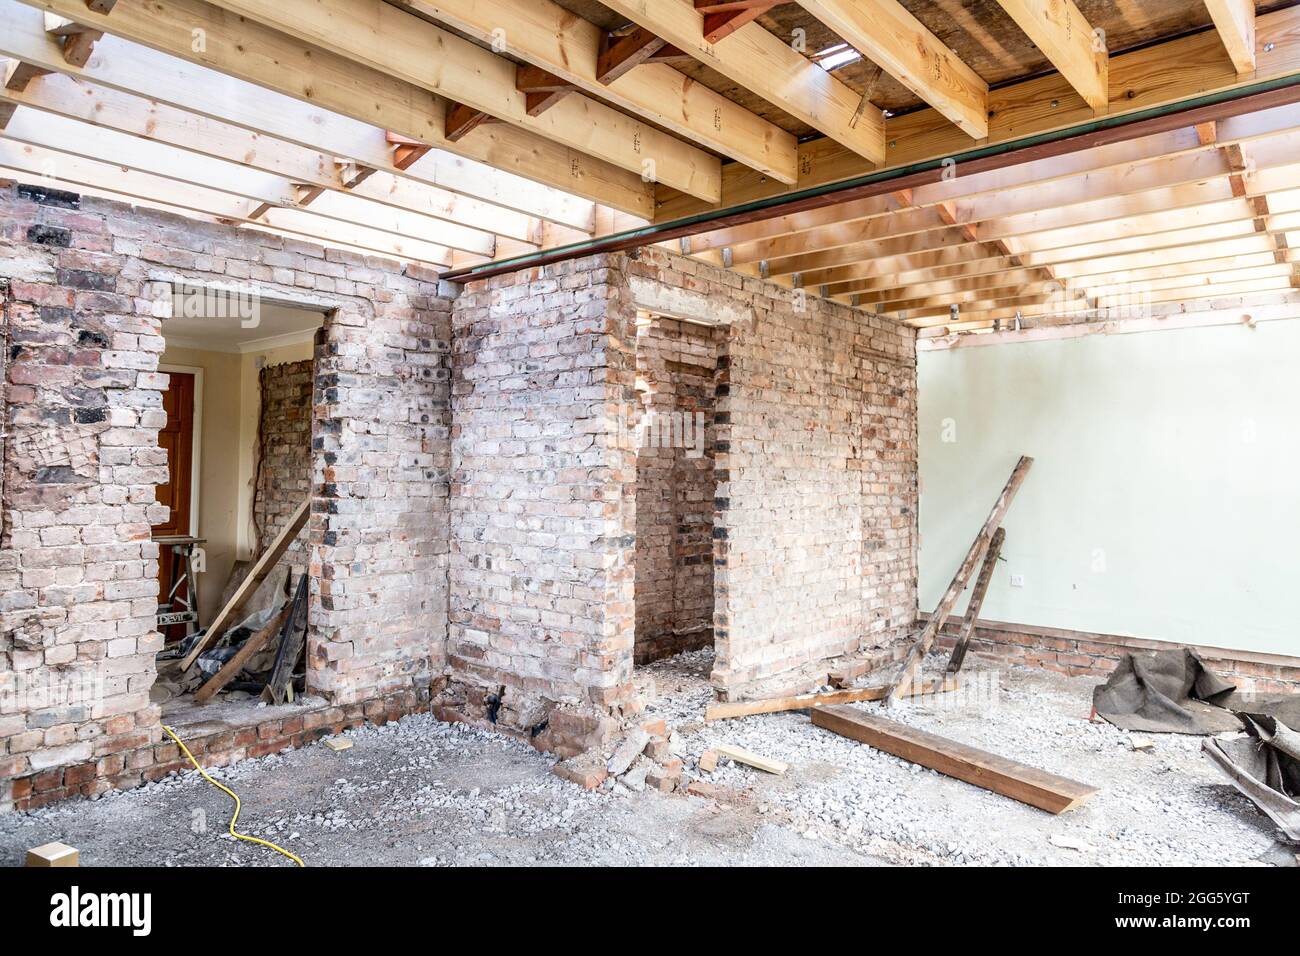 Renovierung eines alten Backsteinhauses, Ziegelmauern und Holzbodenrahmen Stockfoto